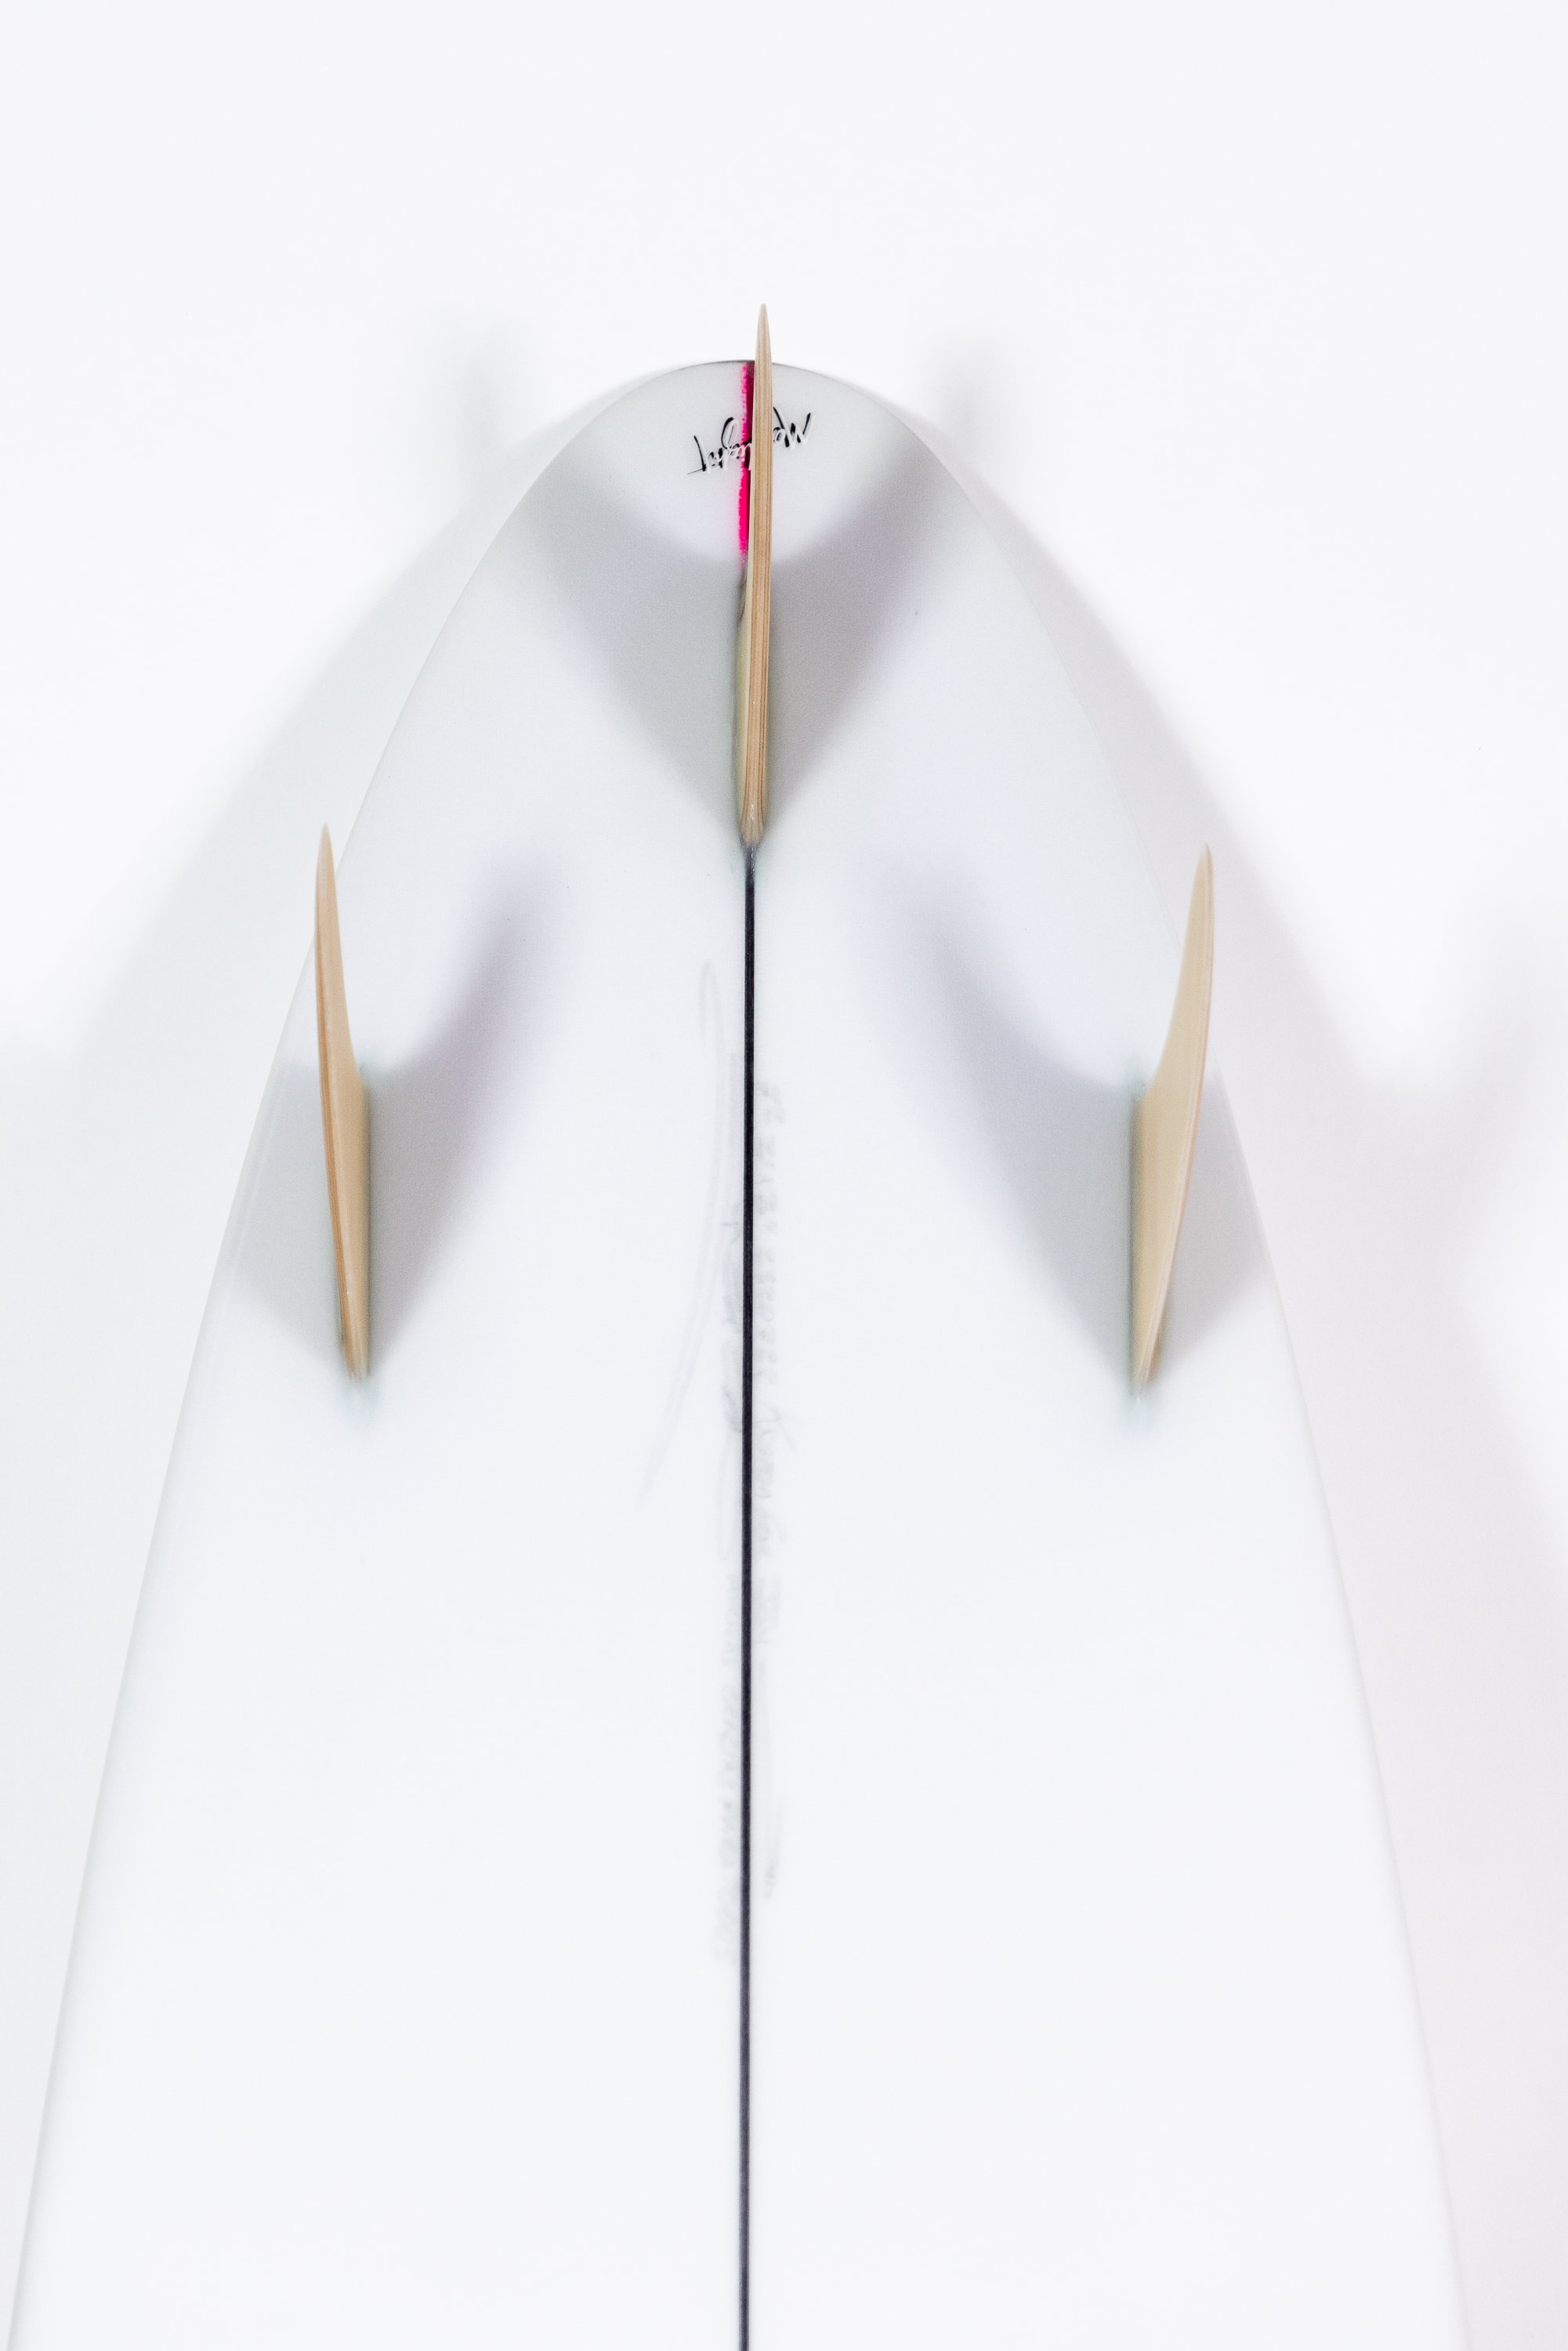 2023-Christenson Surfboards-41.jpg